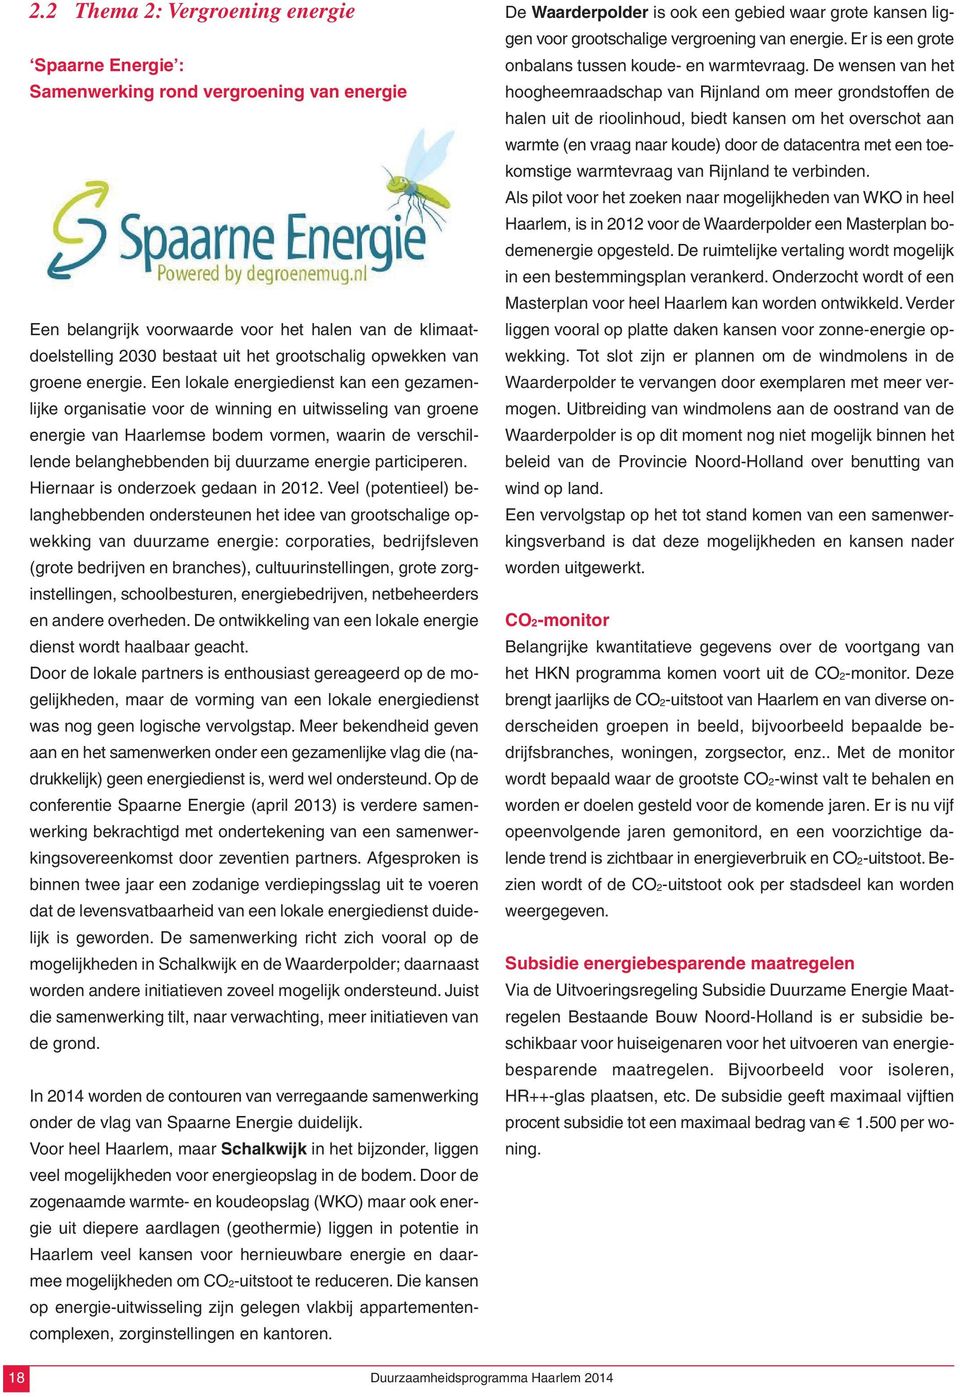 Een lokale energiedienst kan een gezamenlijke organisatie voor de winning en uitwisseling van groene energie van Haarlemse bodem vormen, waarin de verschillende belanghebbenden bij duurzame energie